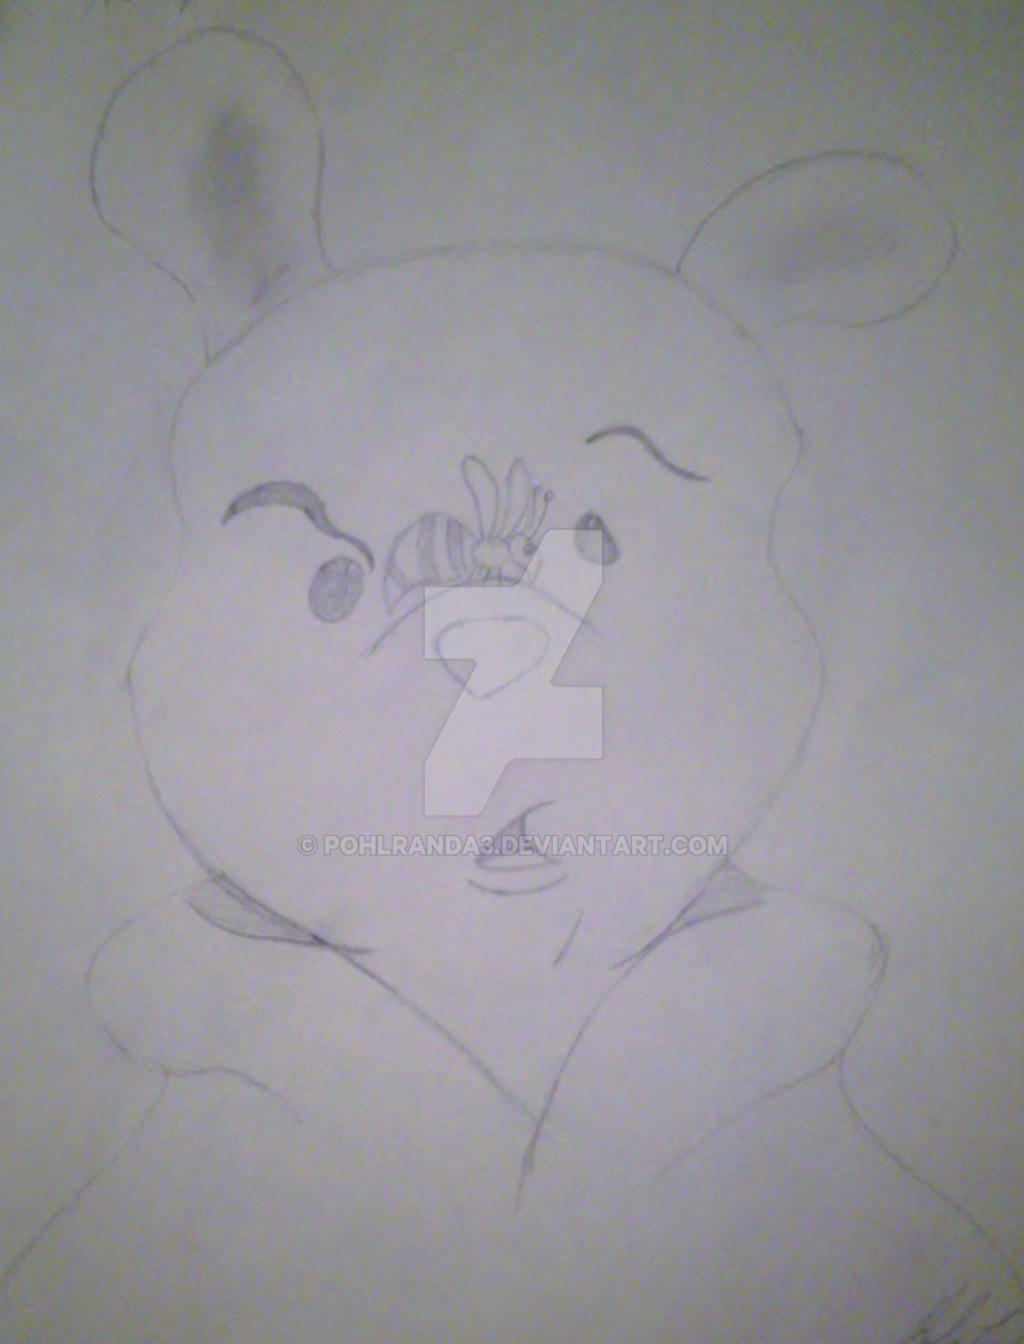 Oh, Pooh Bear!